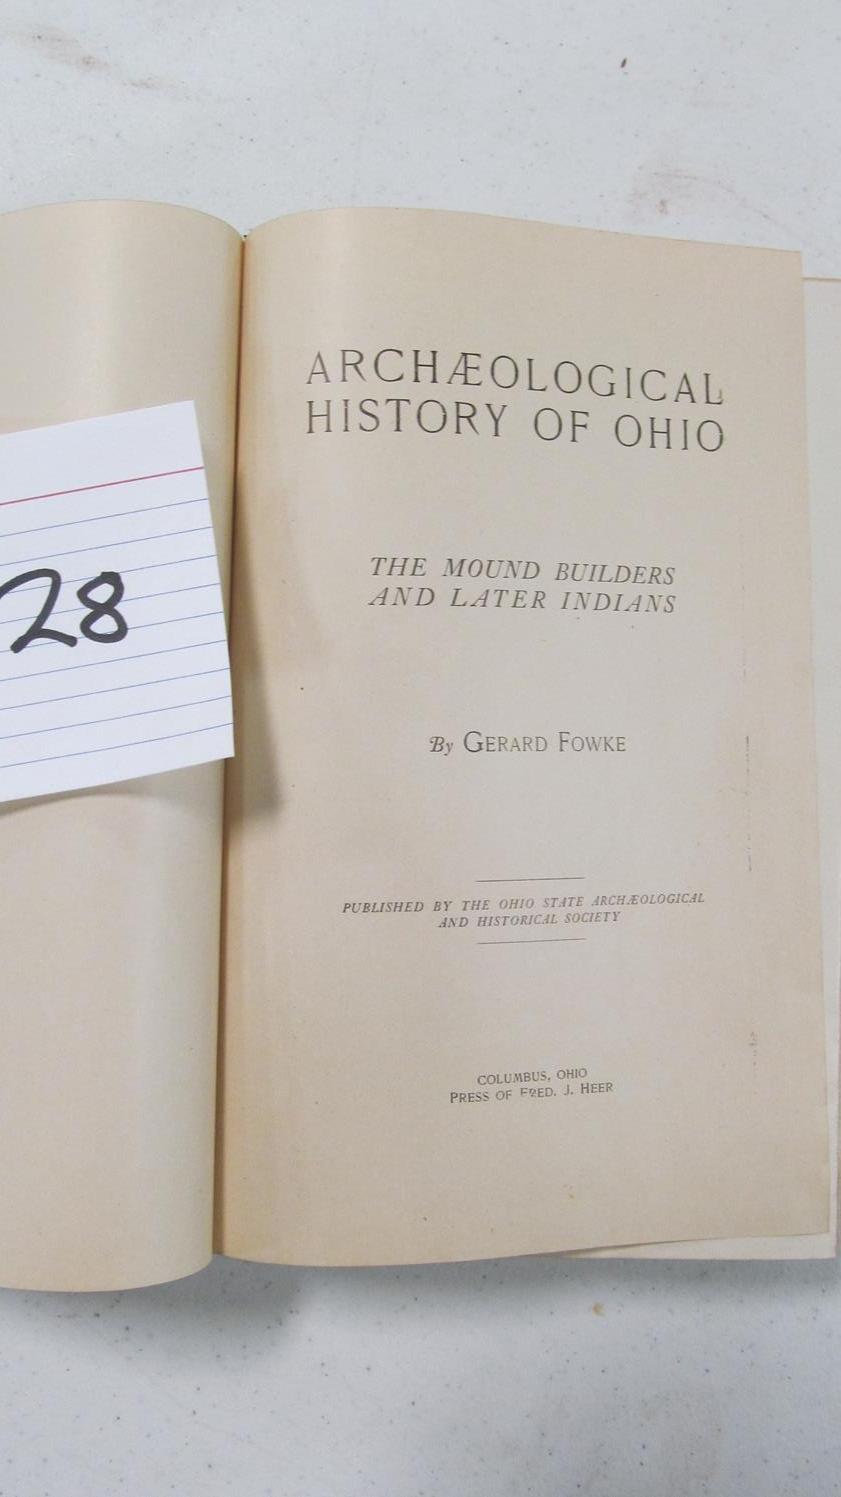 Archeological History Of Ohio By Gerard Fowke, Ohio Estate Archeological And Historical Society